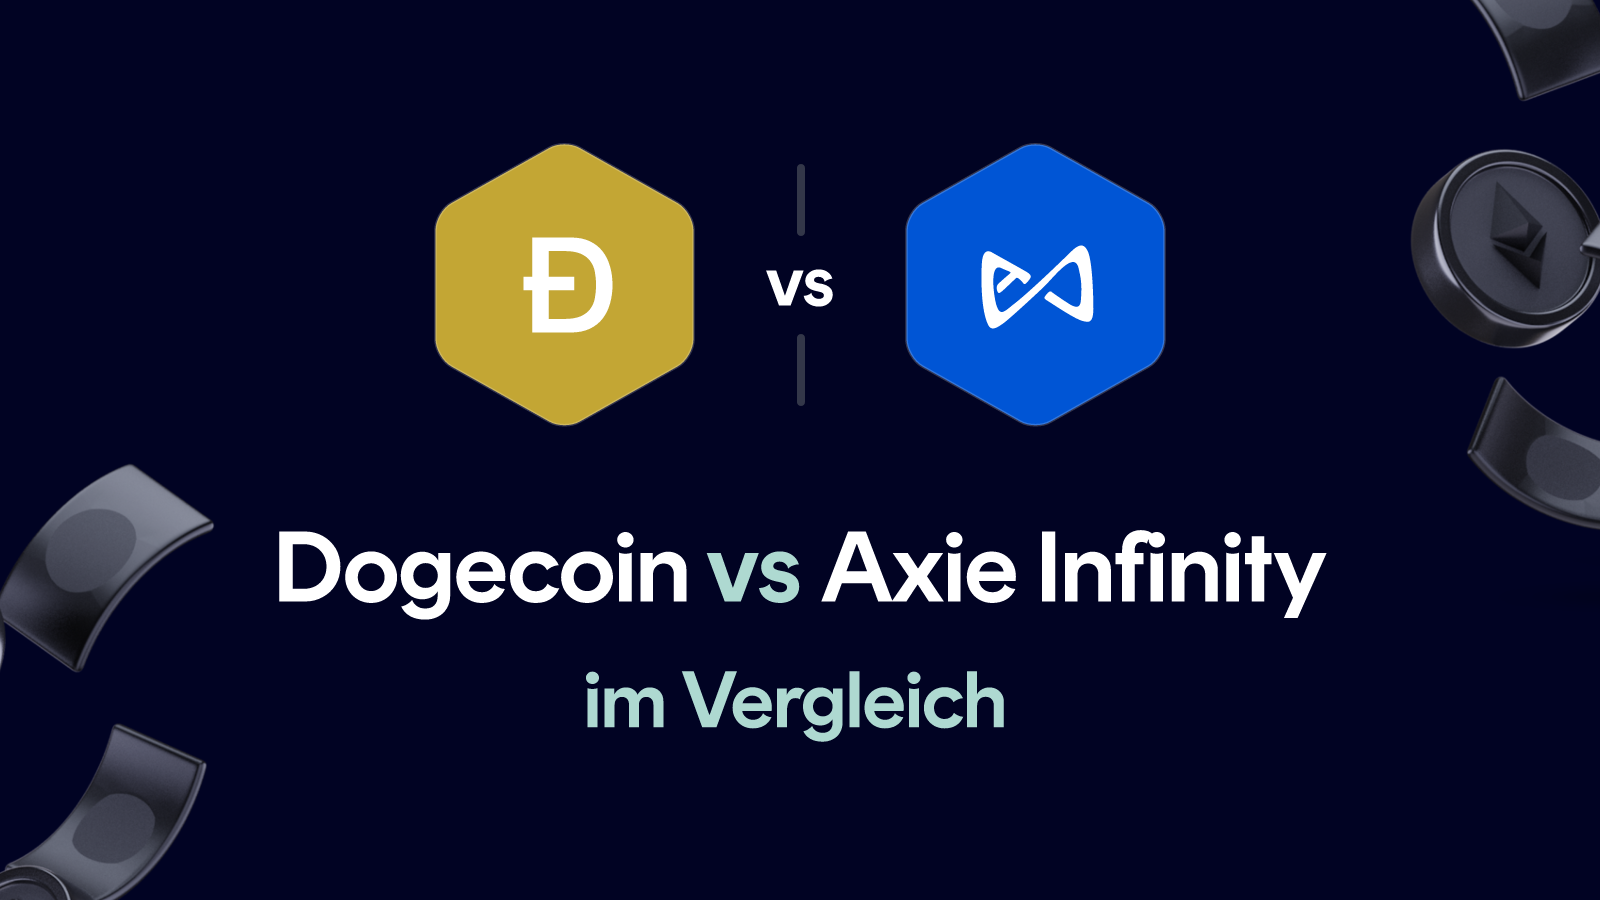 Dogecoin vs Axie Infinity